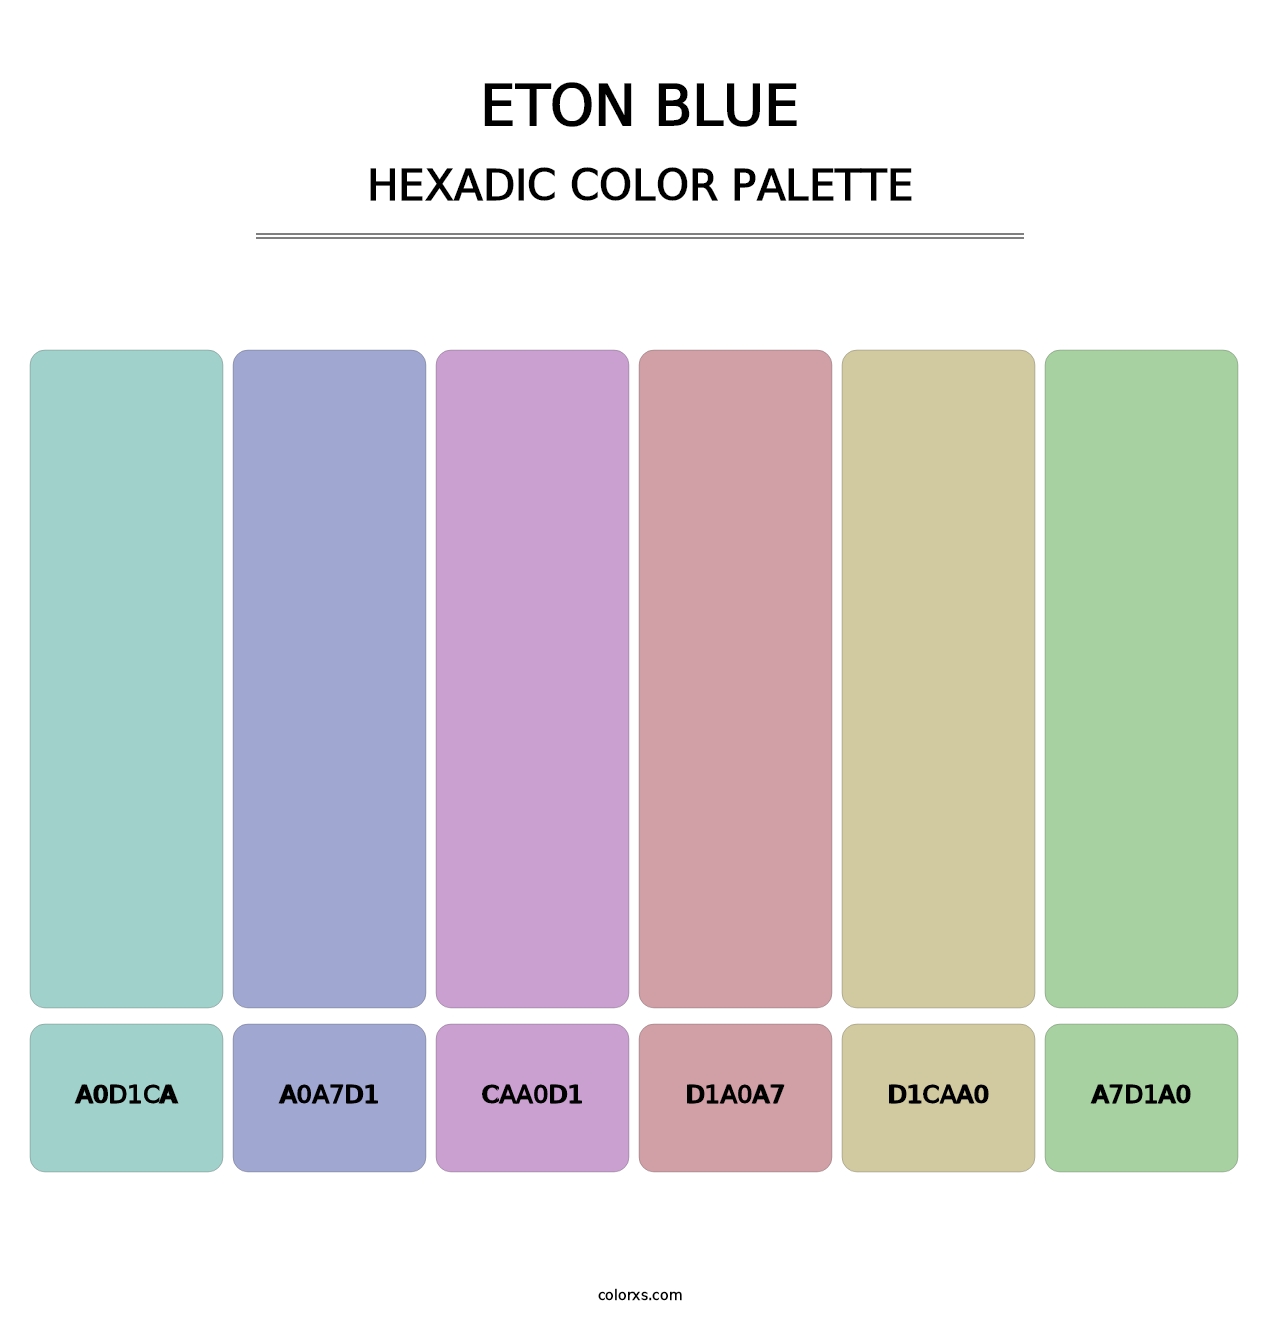 Eton blue - Hexadic Color Palette